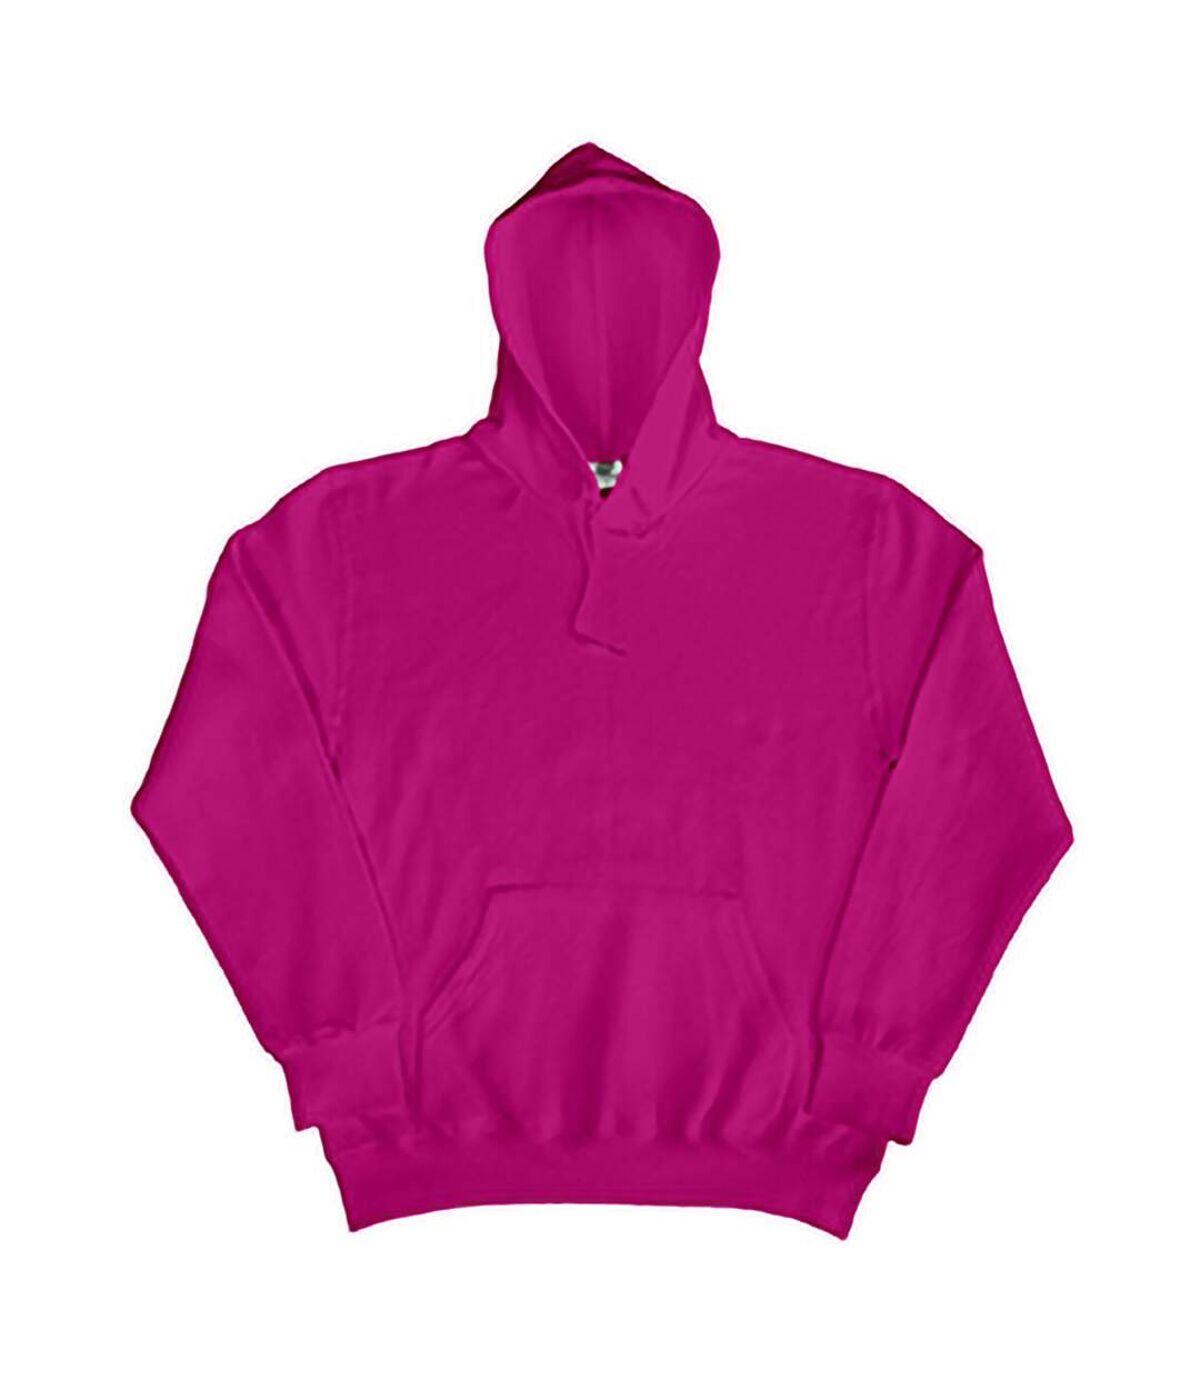 SG Mens Plain Hooded Sweatshirt Top / Hoodie / Sweatshirt (Dark Pink) - UTBC1072